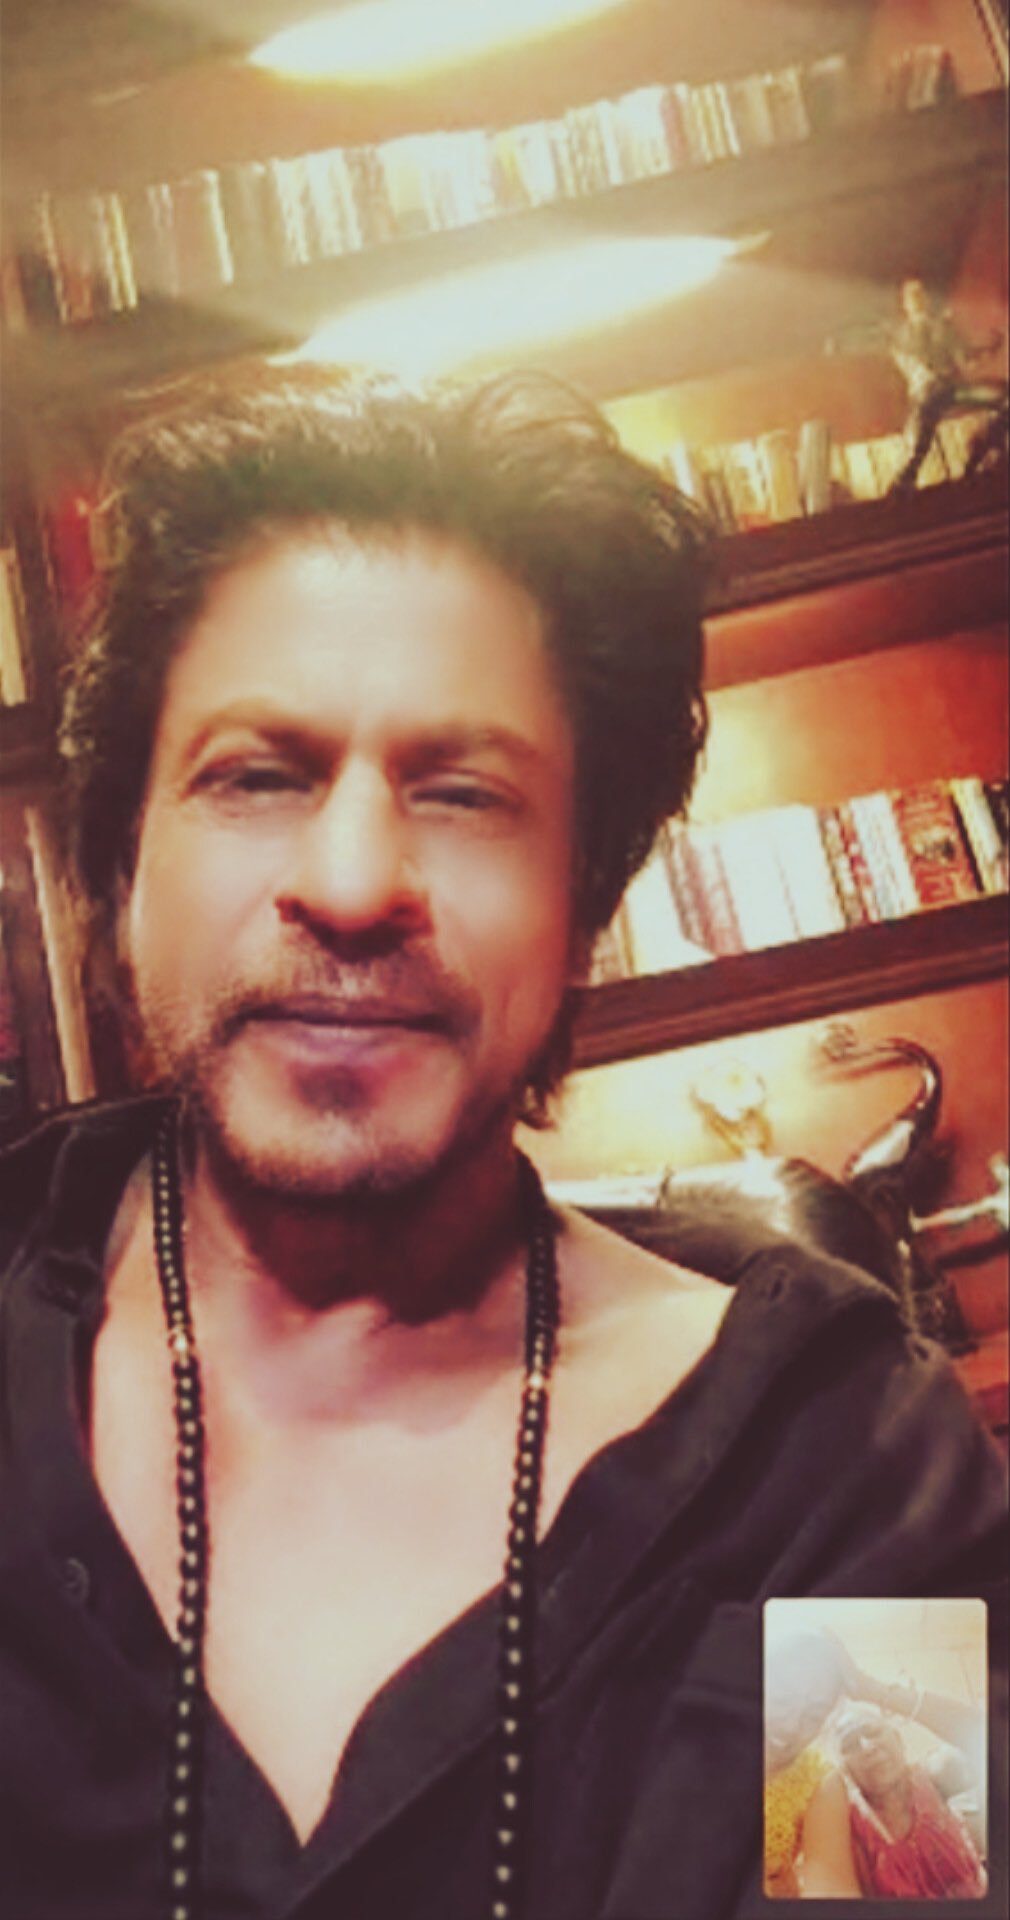 SRK video calls 60-year-old fan battling cancer